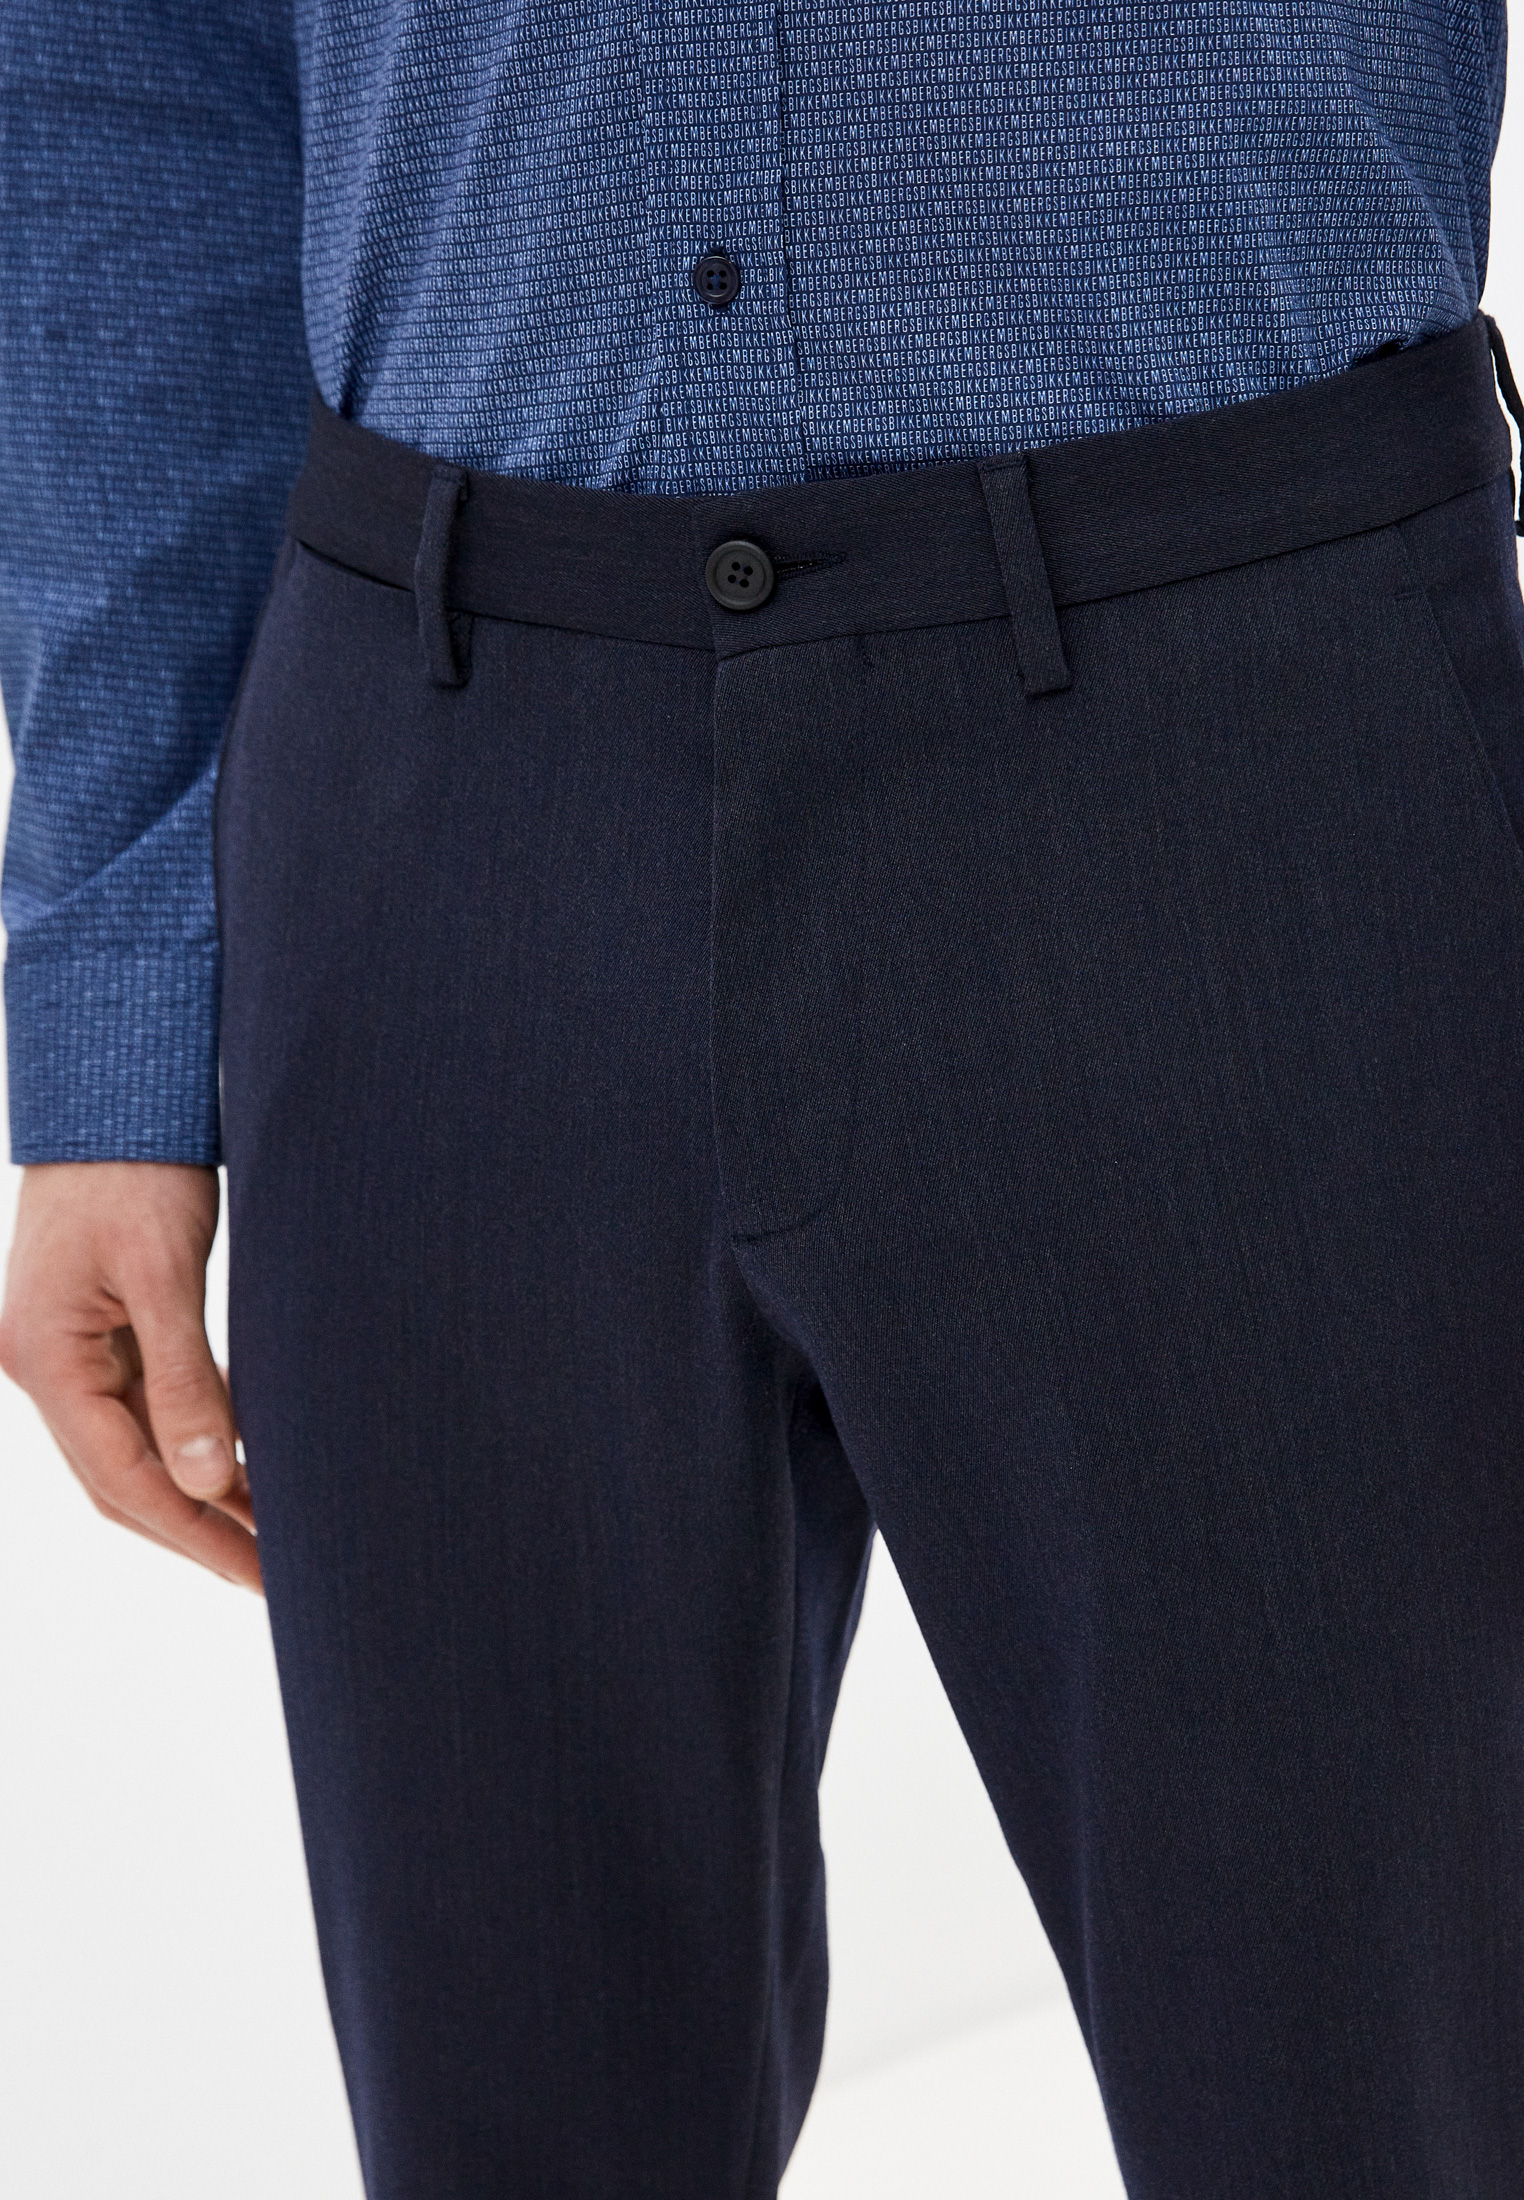 Мужские повседневные брюки Bikkembergs (Биккембергс) C P 001 00 S 3331: изображение 10